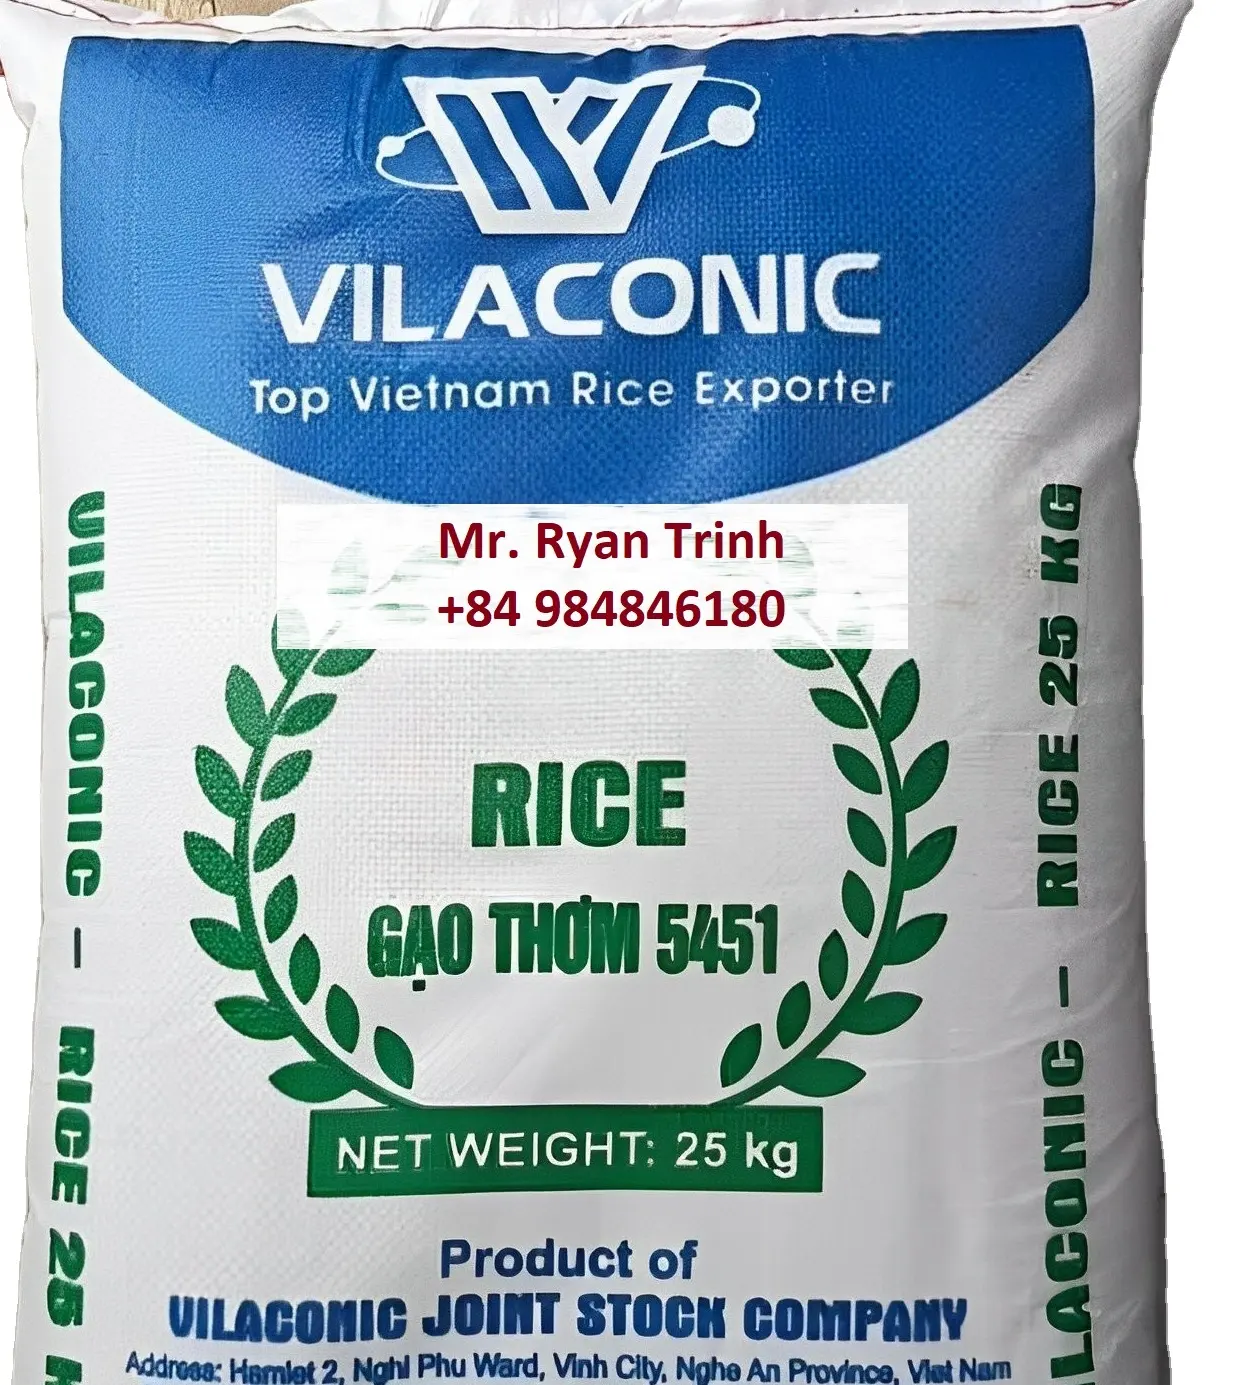 54541 चावल से OM5451RICE Vilaconic फैक्टरी में उपलब्ध अनन्य ब्रांड या निजी ब्रांड नई वितरकों के लिए देख